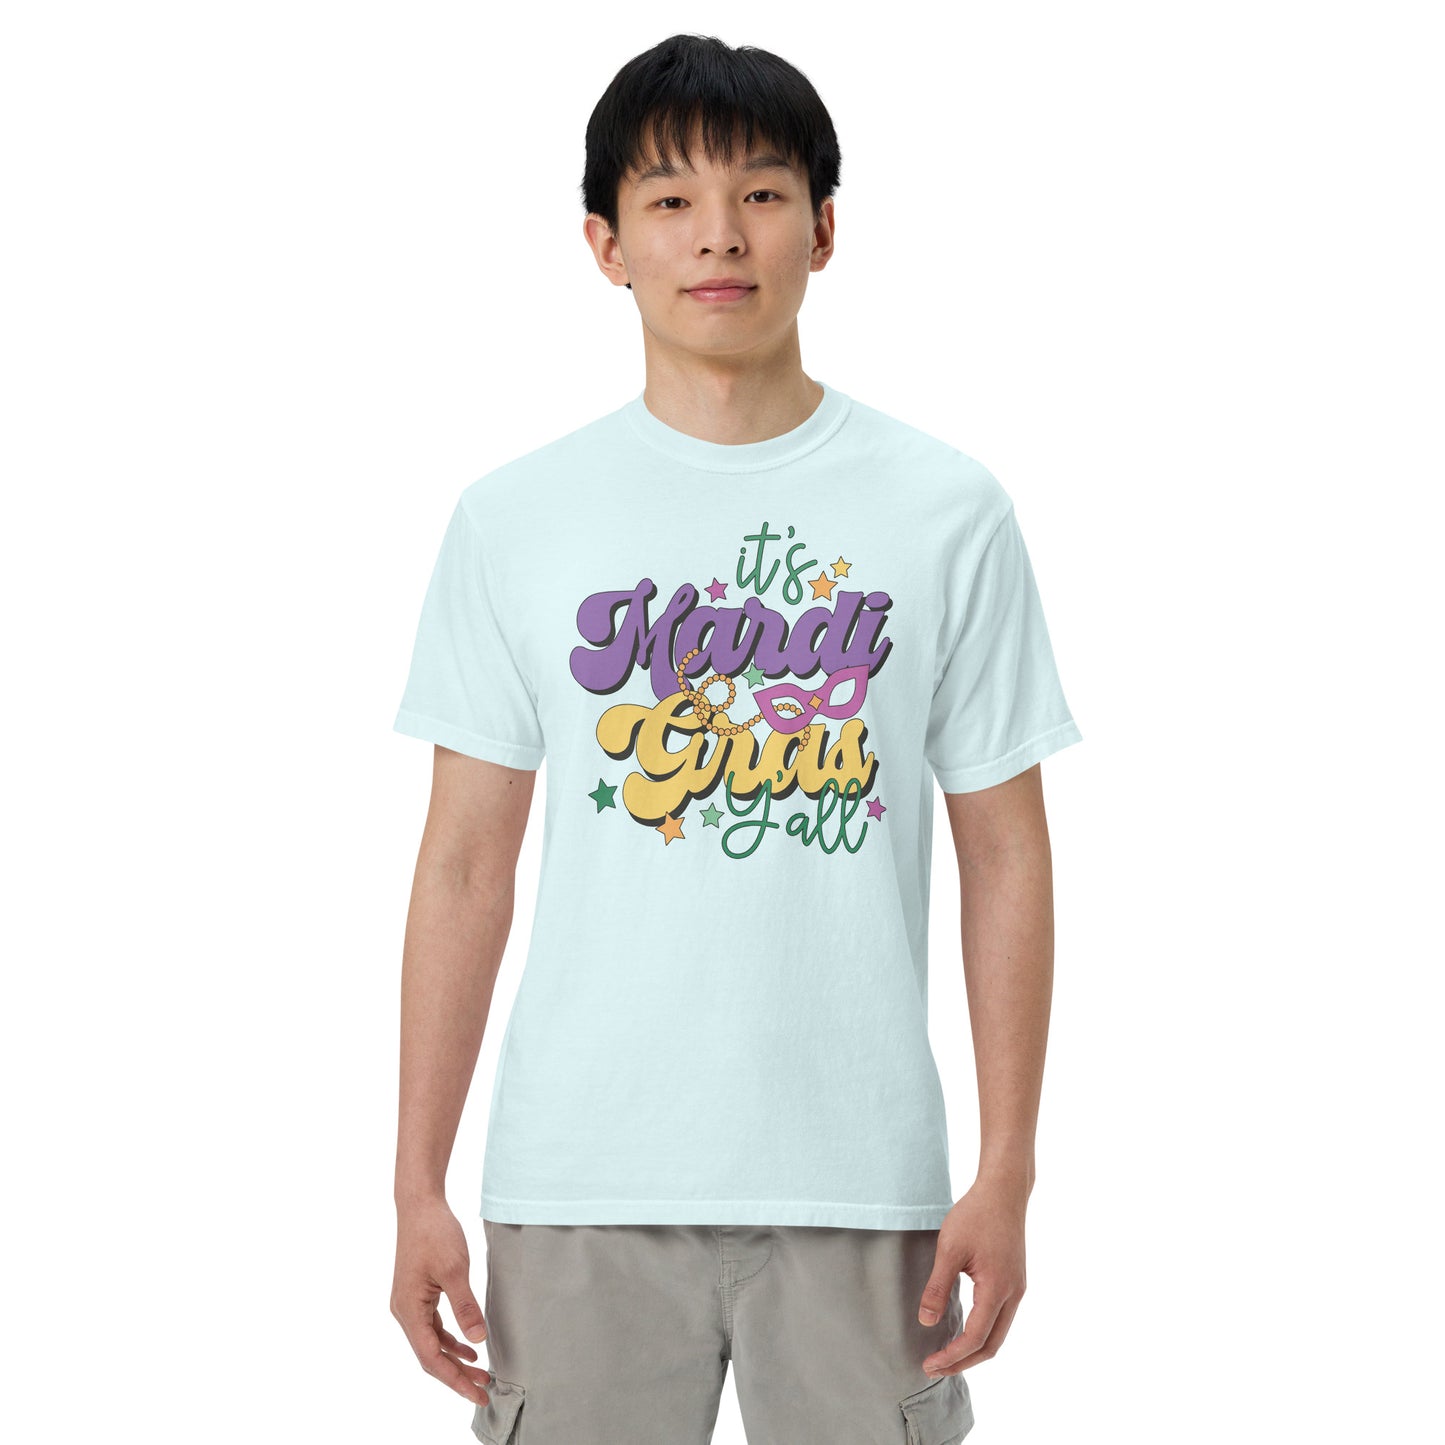 It's Mardi Gras Ya'll - Comfort Colors t-shirt